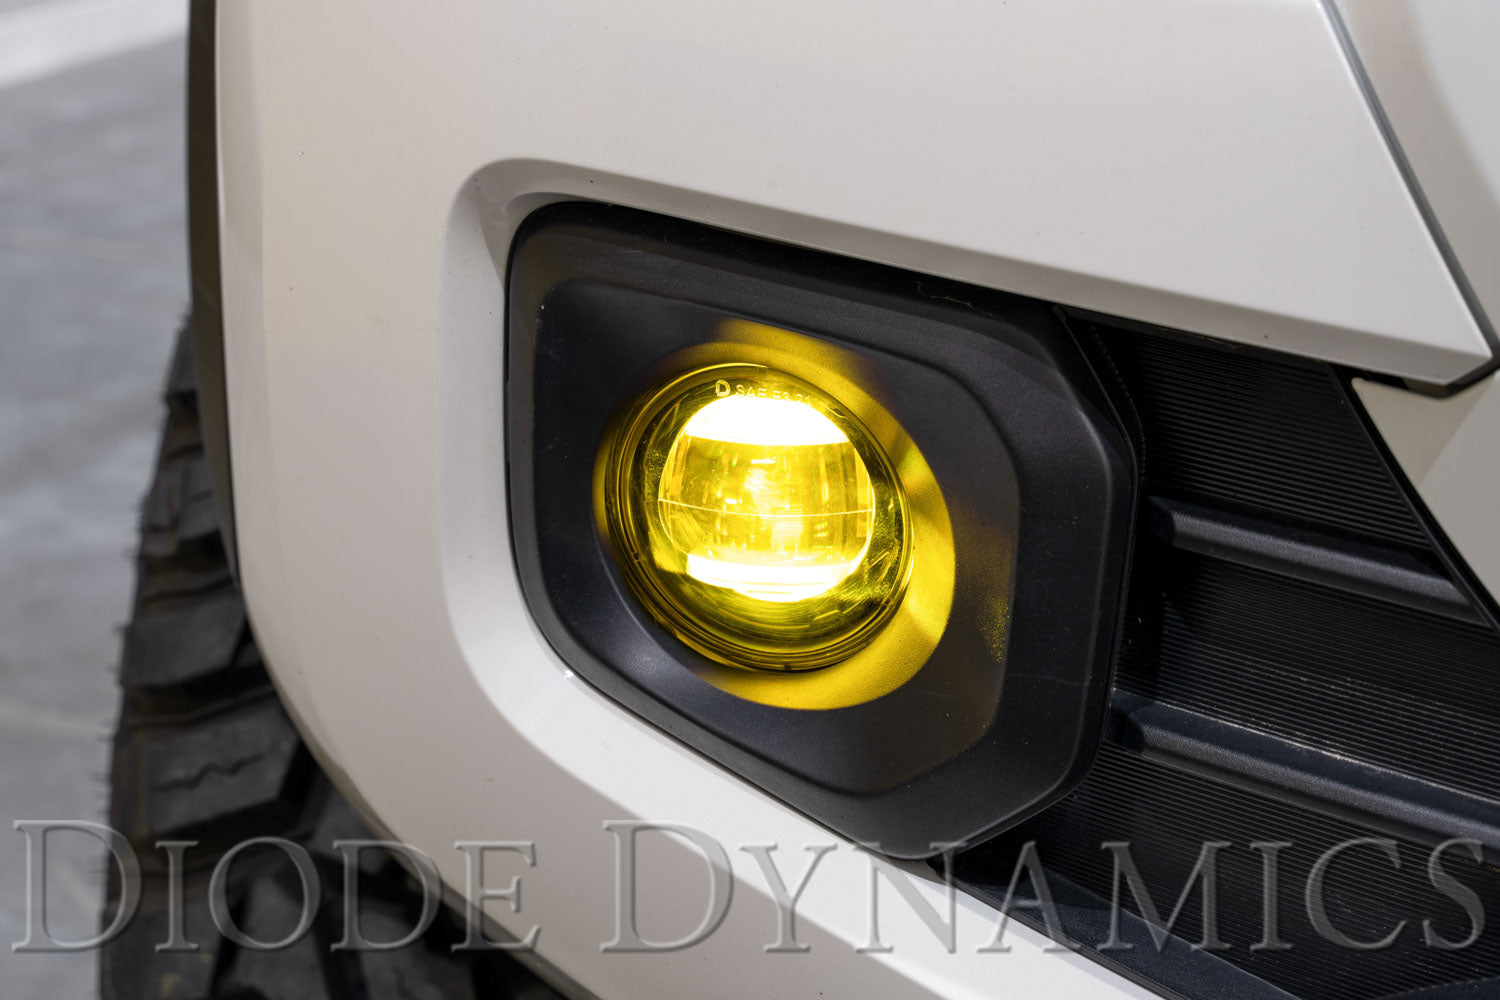 Elite Series Fog Lamps for 2013-2018 Lexus ES300h (pair)-